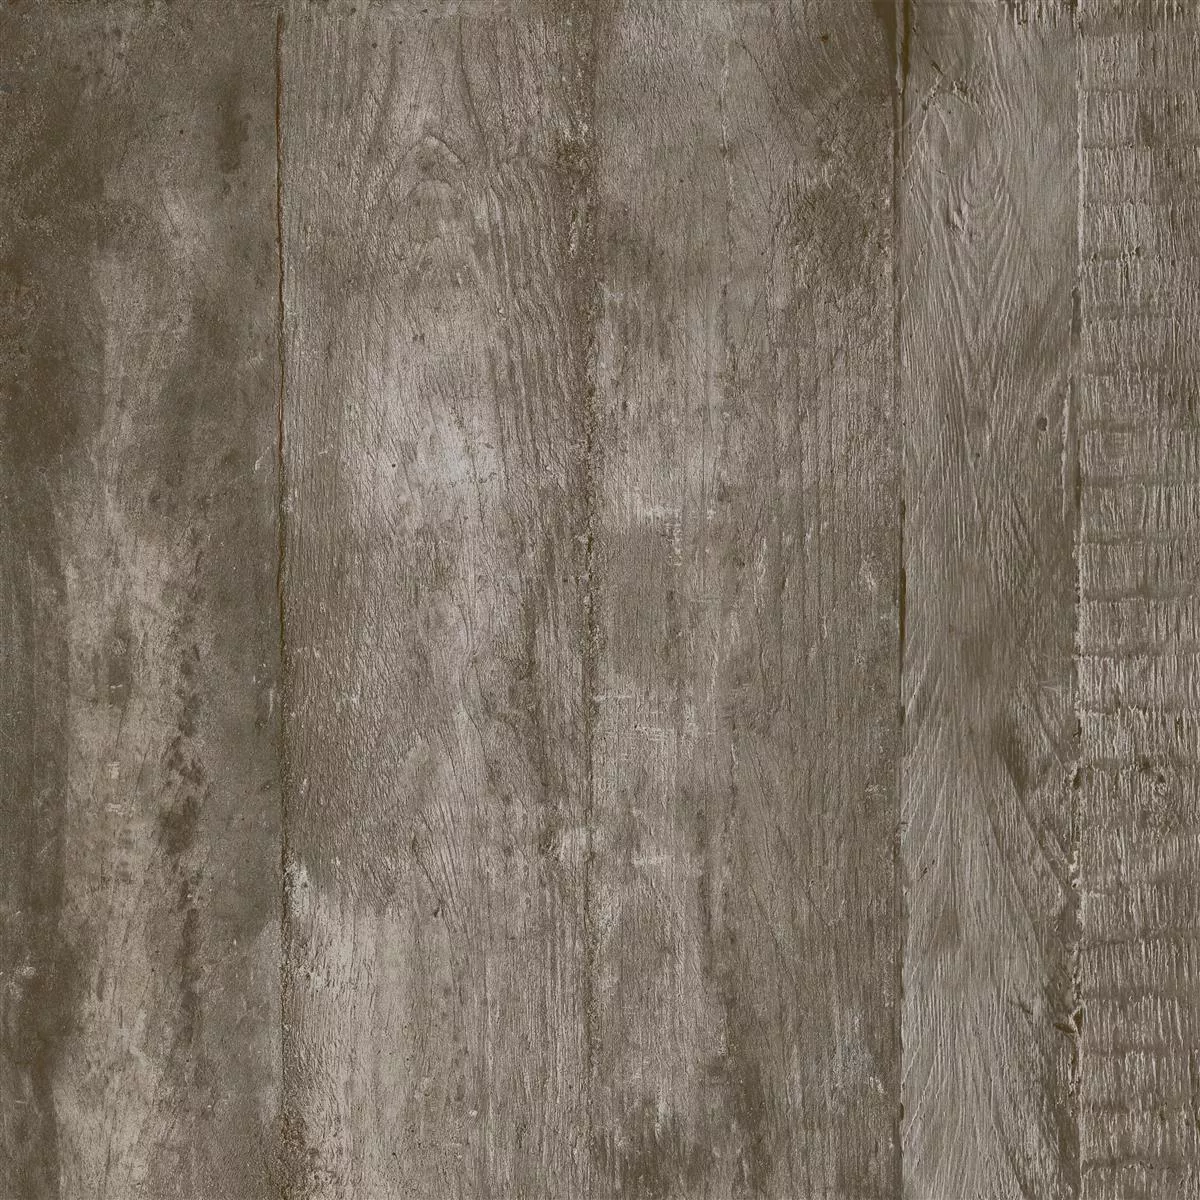 Muster Bodenfliesen Gorki Holzoptik 60x60cm Glasiert Braun